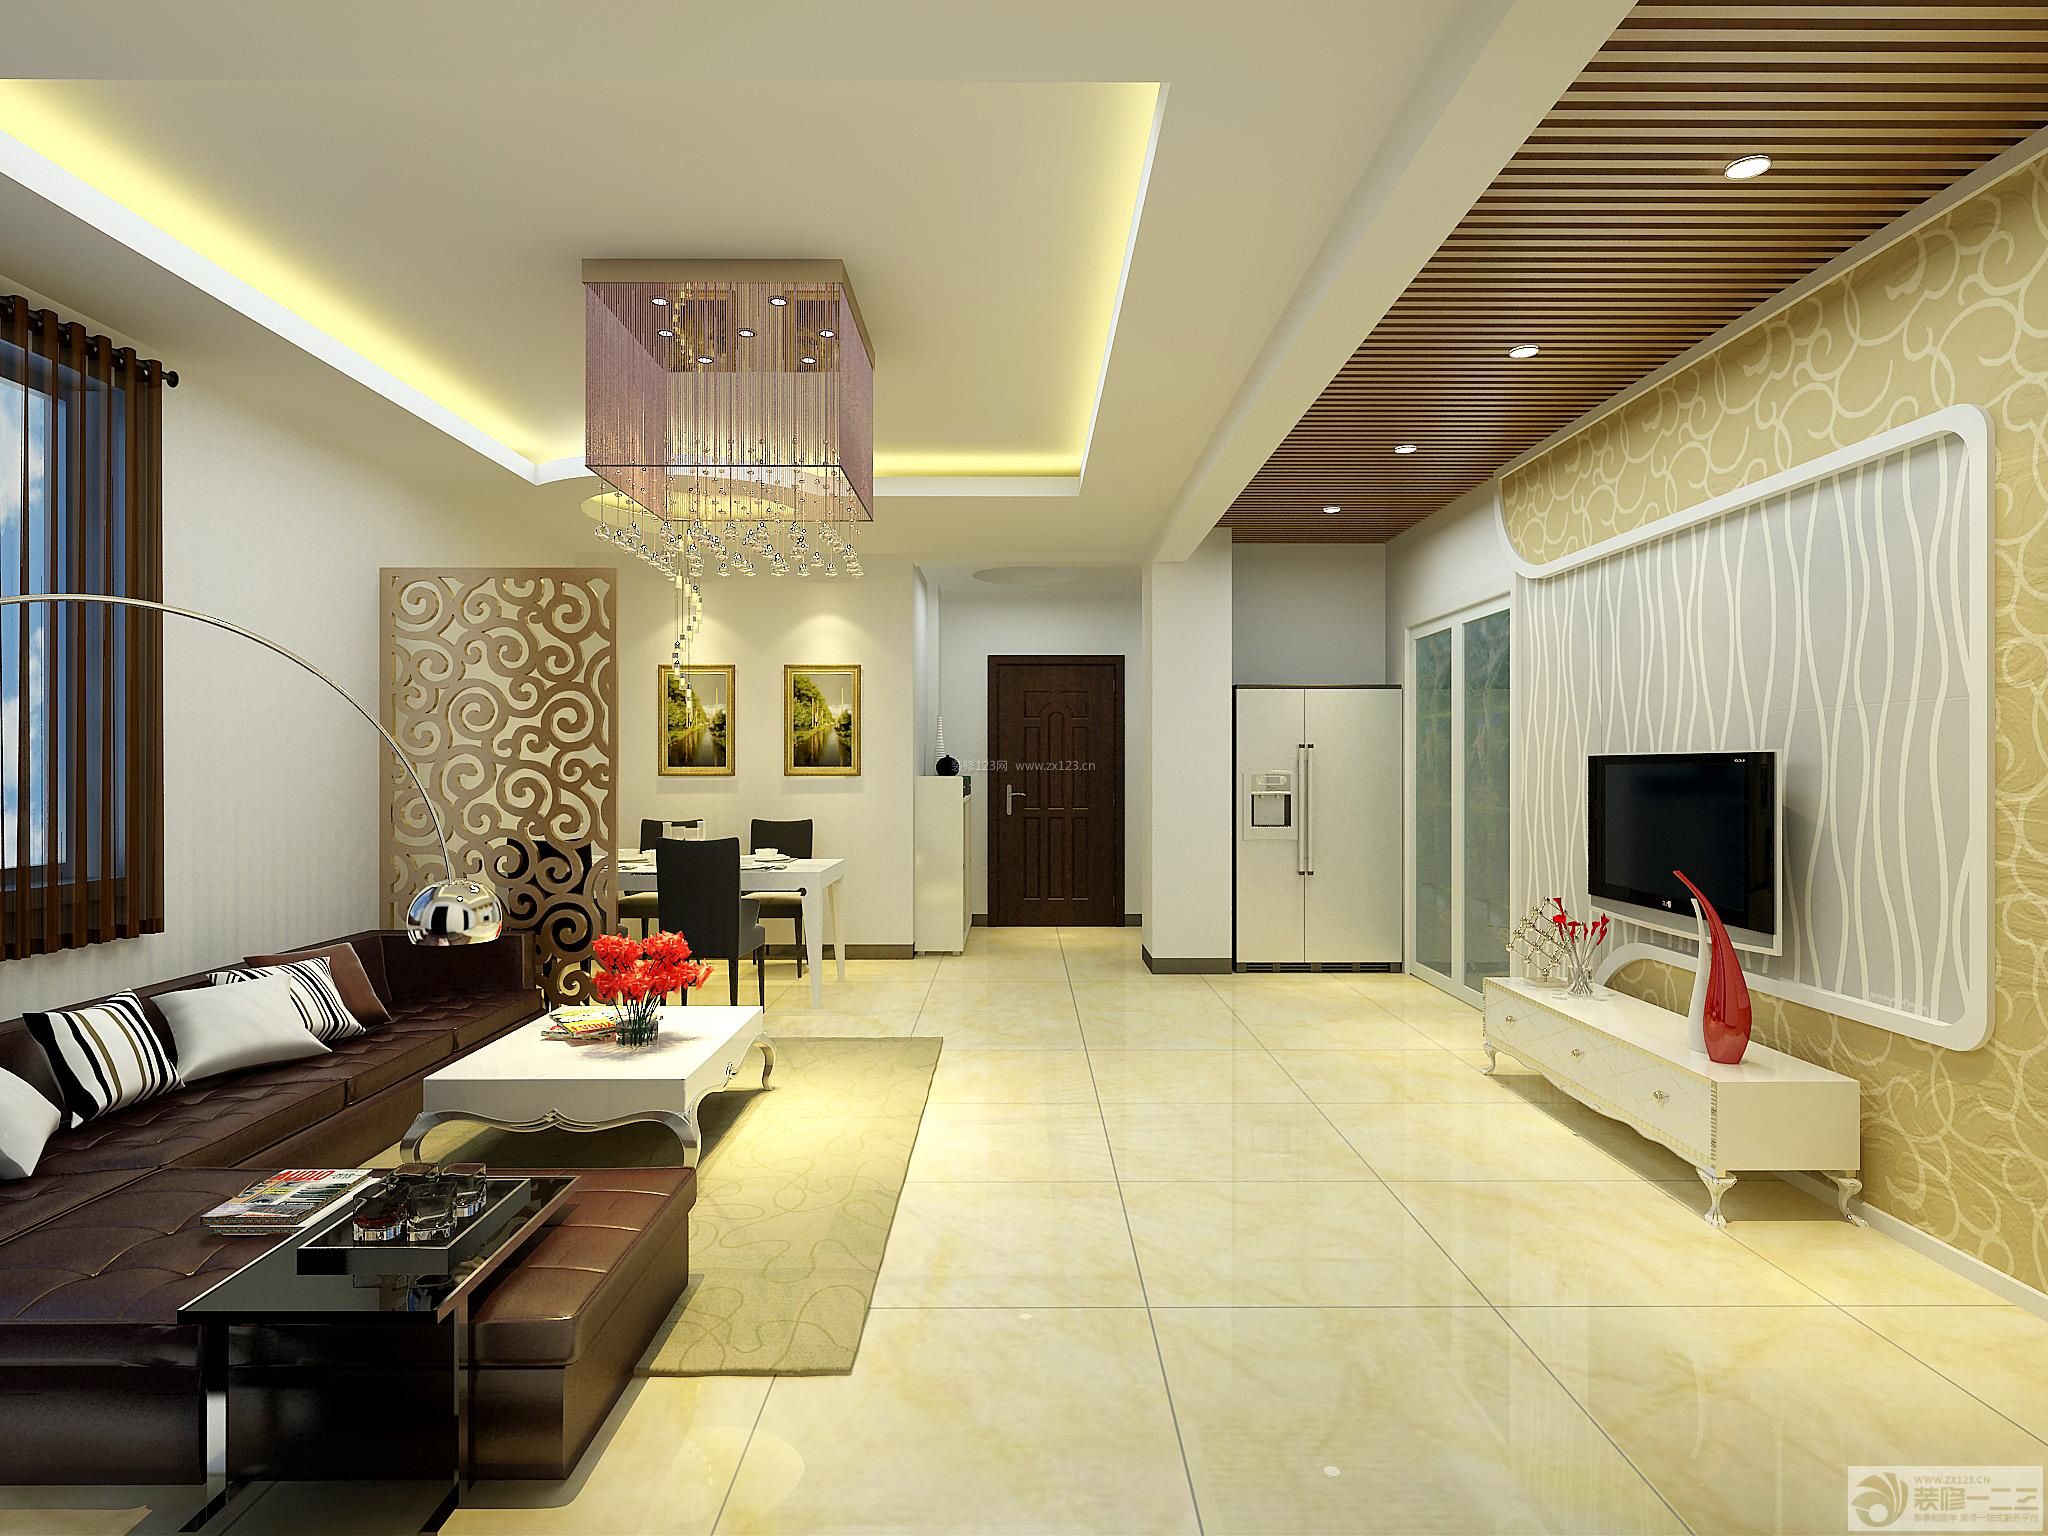 两室两厅 长方形客厅 客厅装修设计 抽象图案壁纸 背景墙壁纸 电视